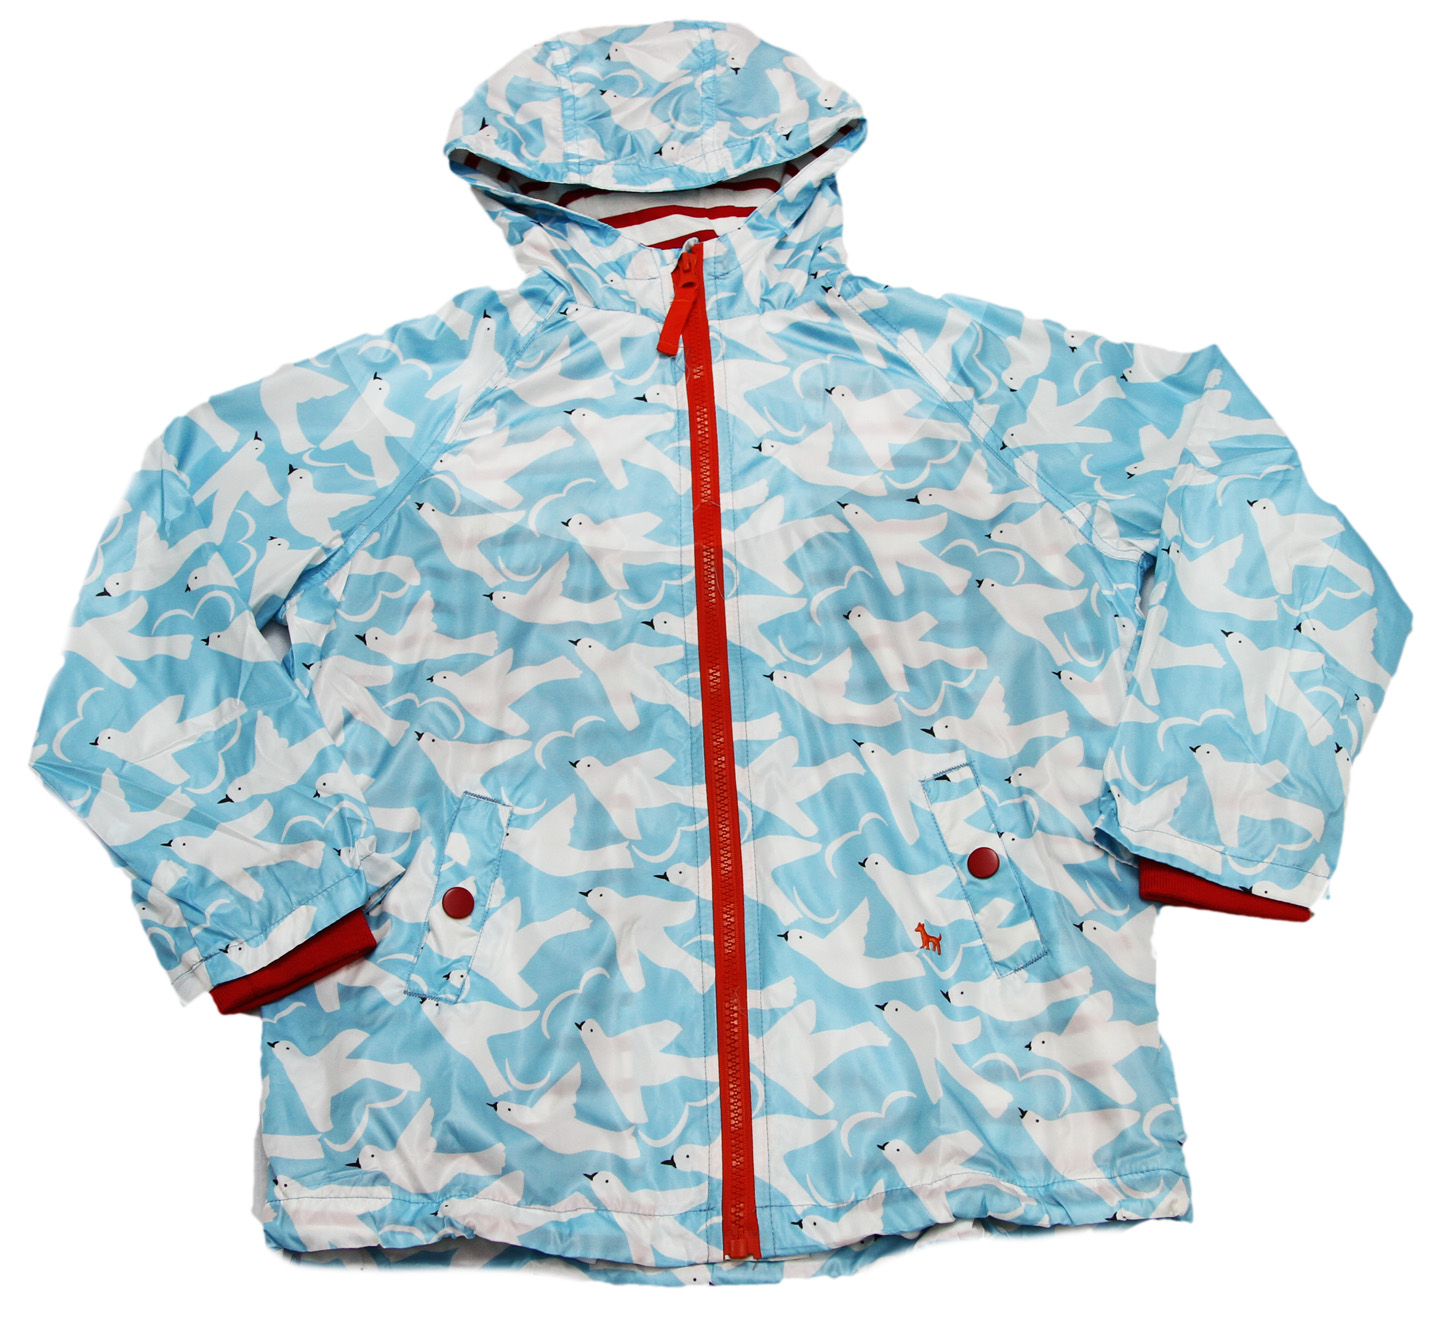 D7B01004 Спортивная куртка (Р-р: 2; Цв.: Голубой)